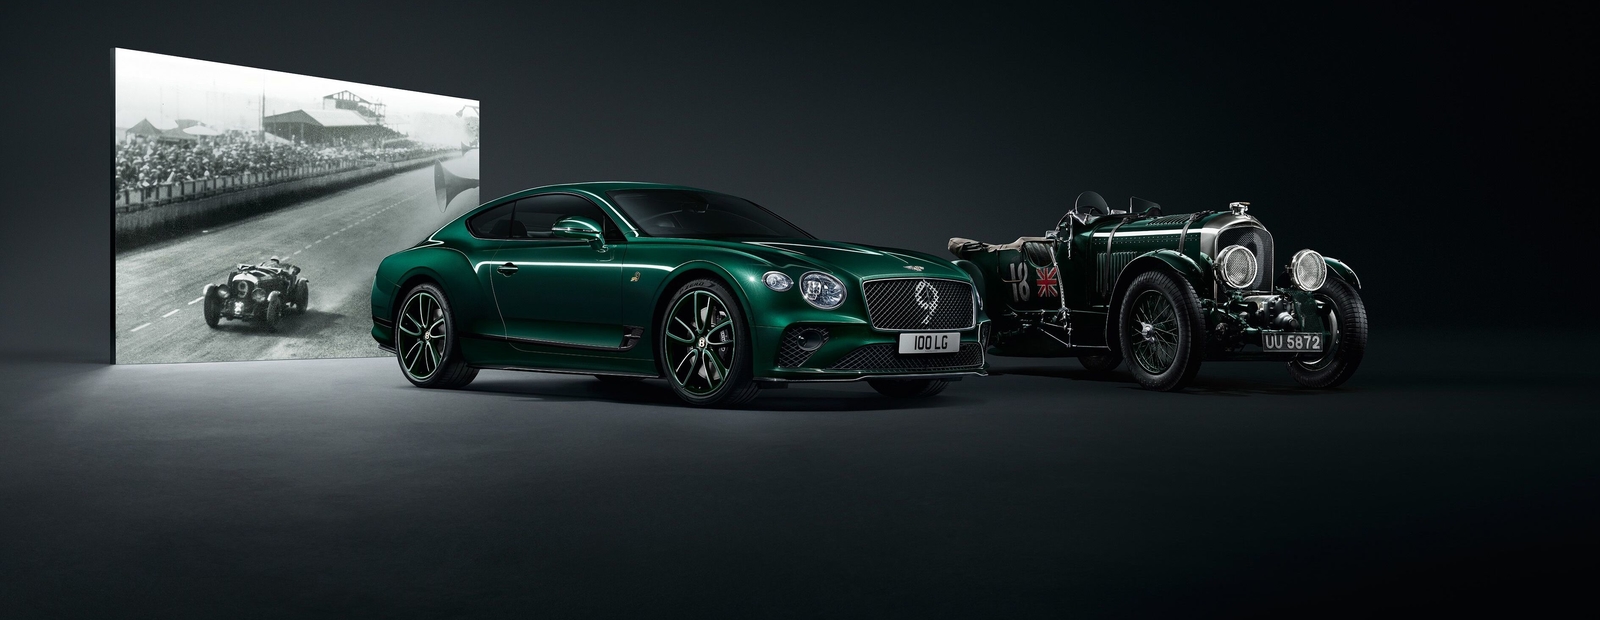 Bentley выпустила эксклюзивный Continental GT в духе спорткара 30-х годов